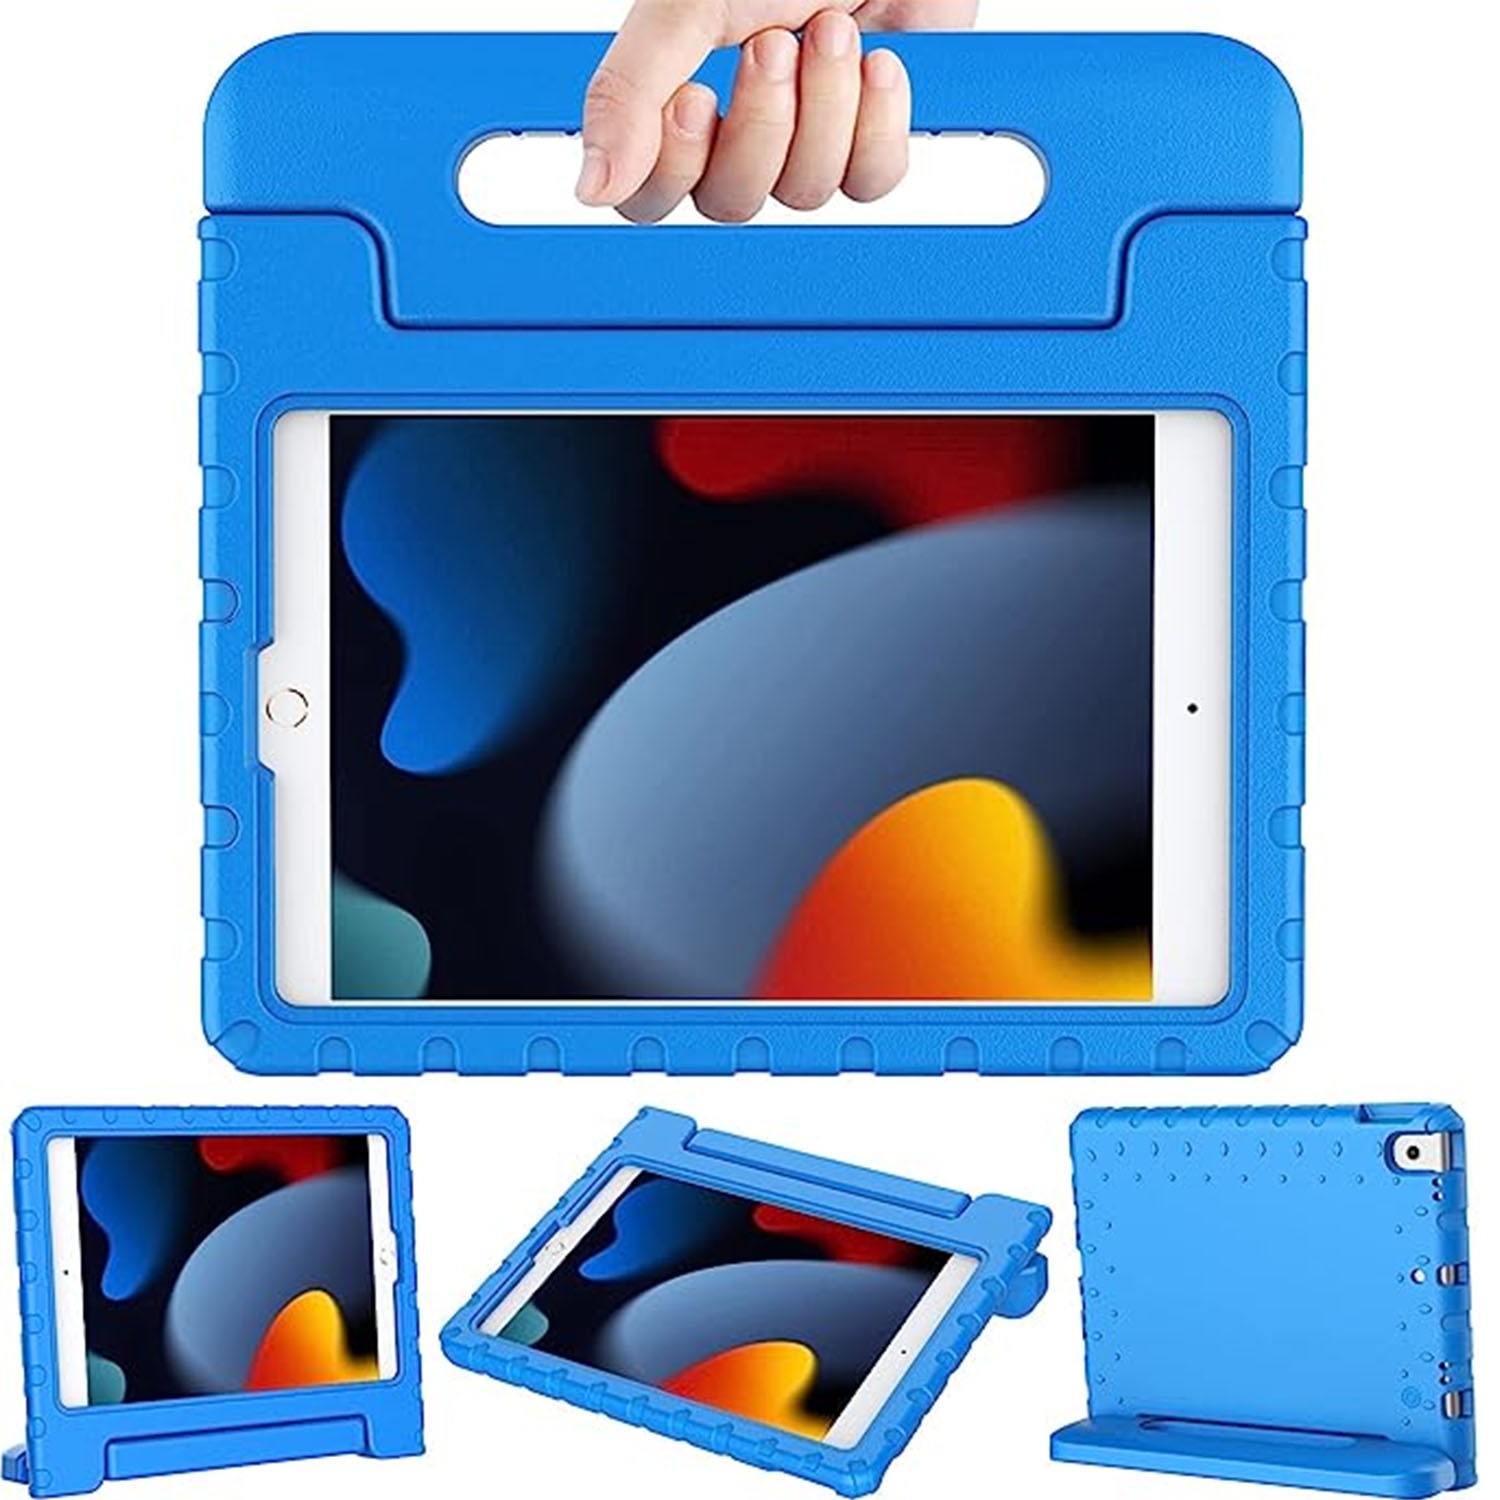 Funda a prueba de golpes para niños iPad Pro 10.5 2nd Gen (2017) azul